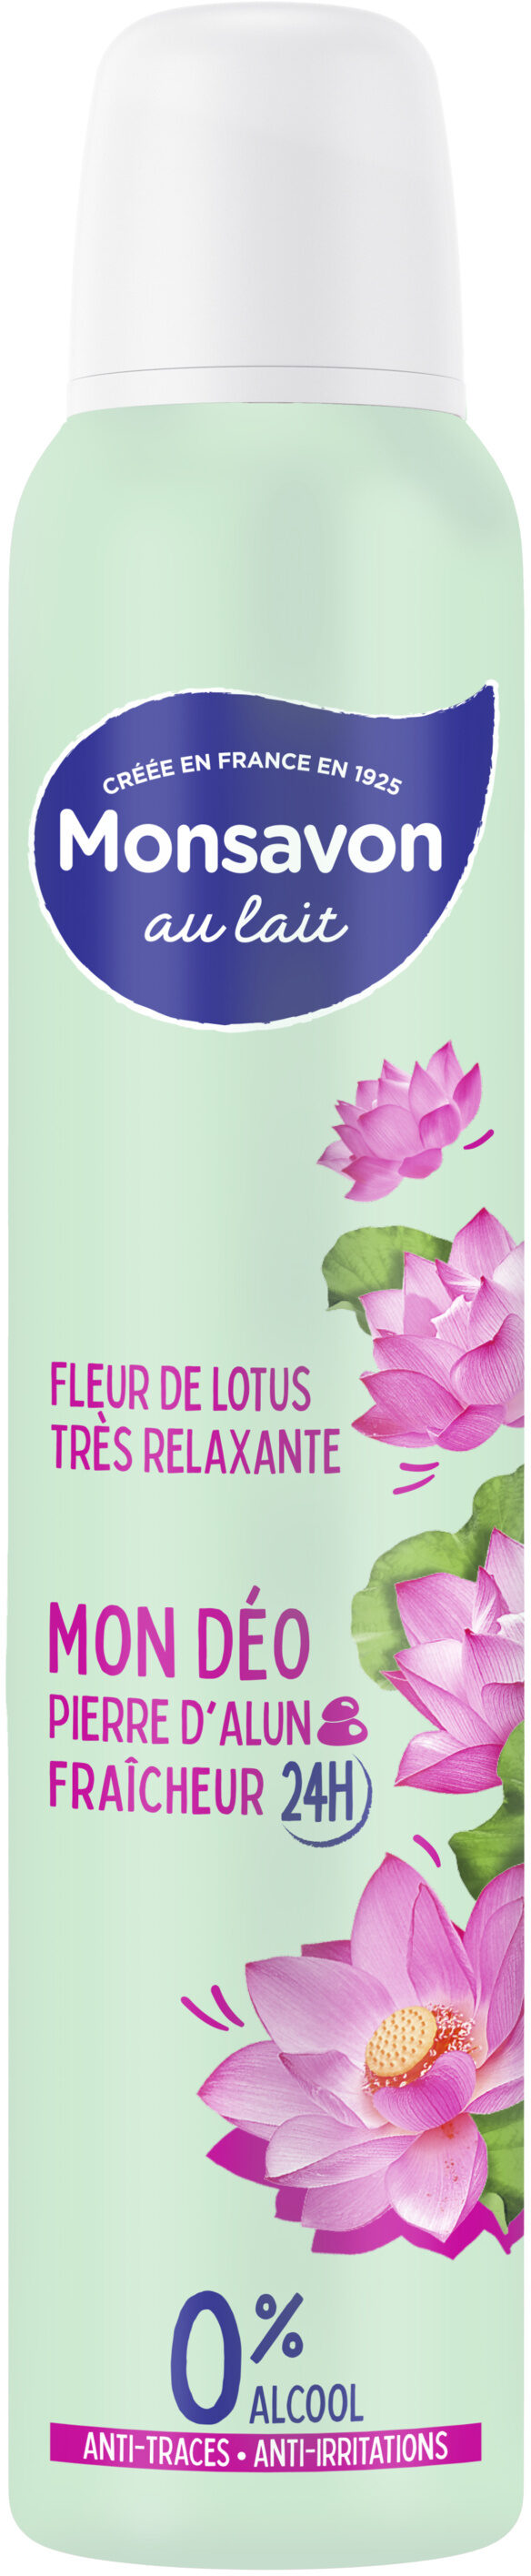 Monsavon Déodorant Femme Spray Fleur de Lotus Presque Divine 200ml - Product - fr